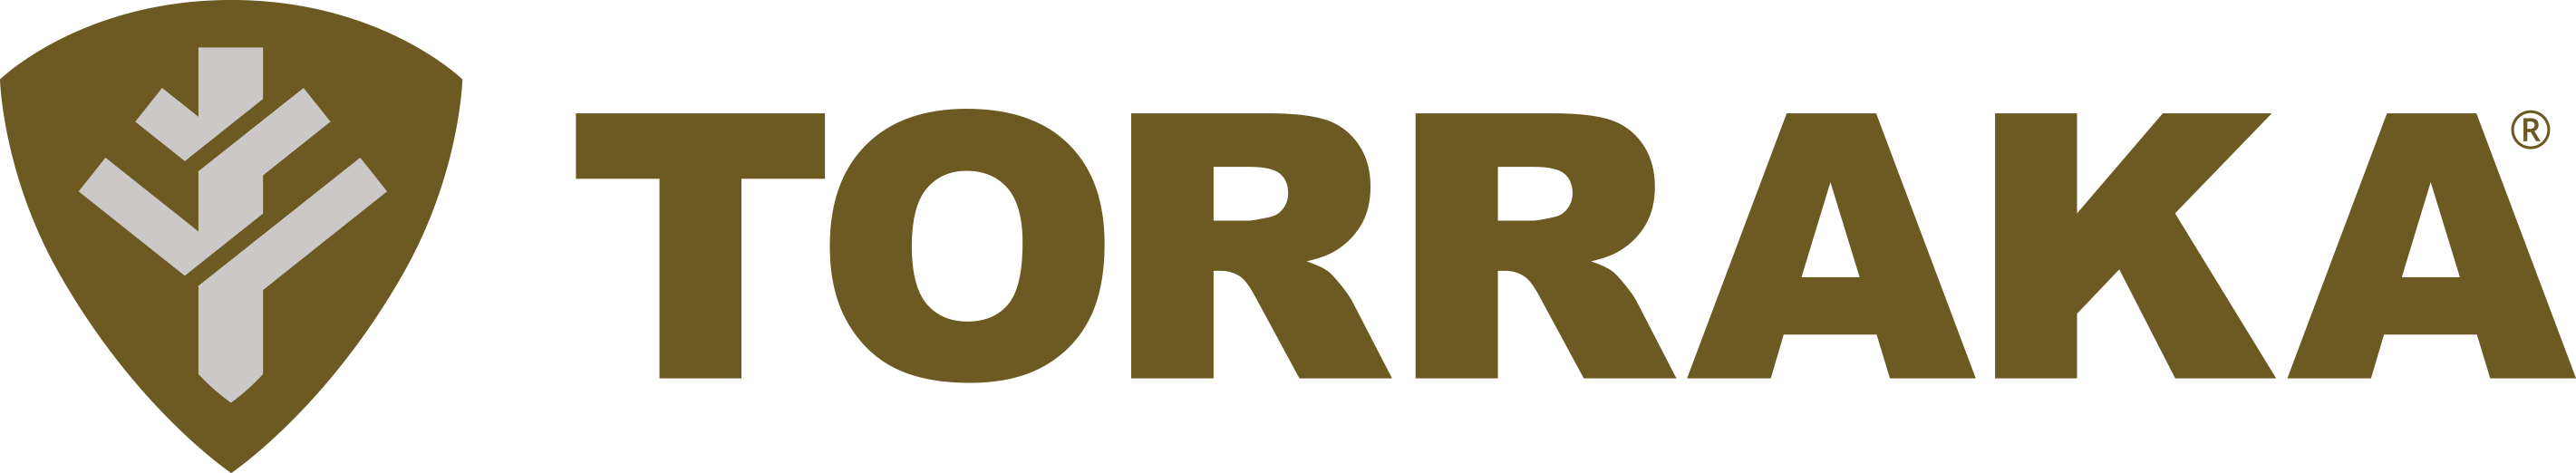 Torraka logo